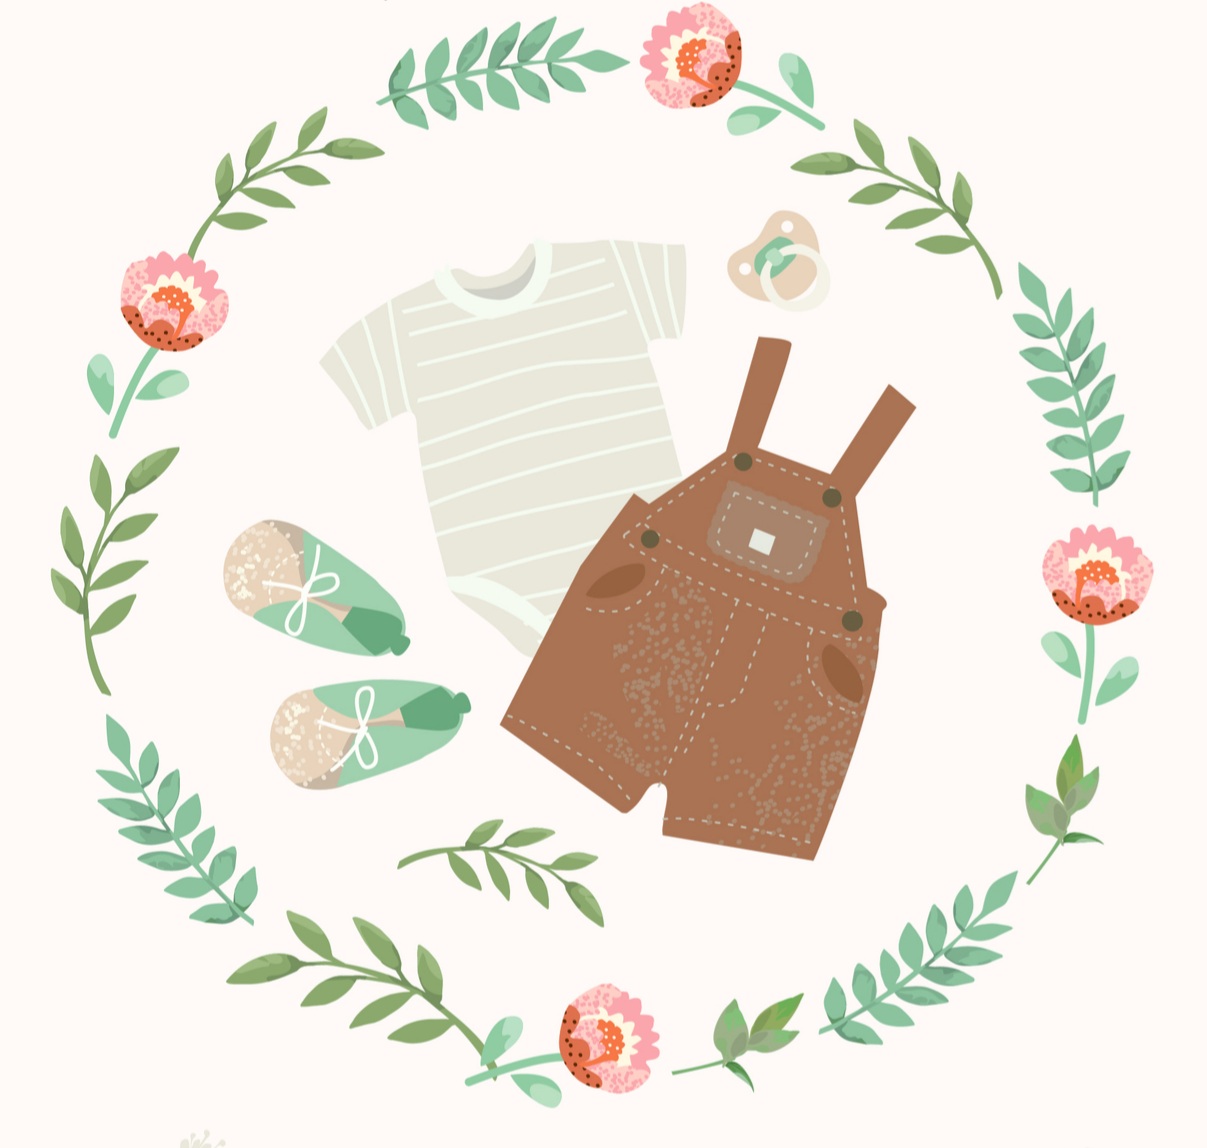 100% bavlněné oblečení pro děti s citlivou pokožkou, alergiky a ekzematiky